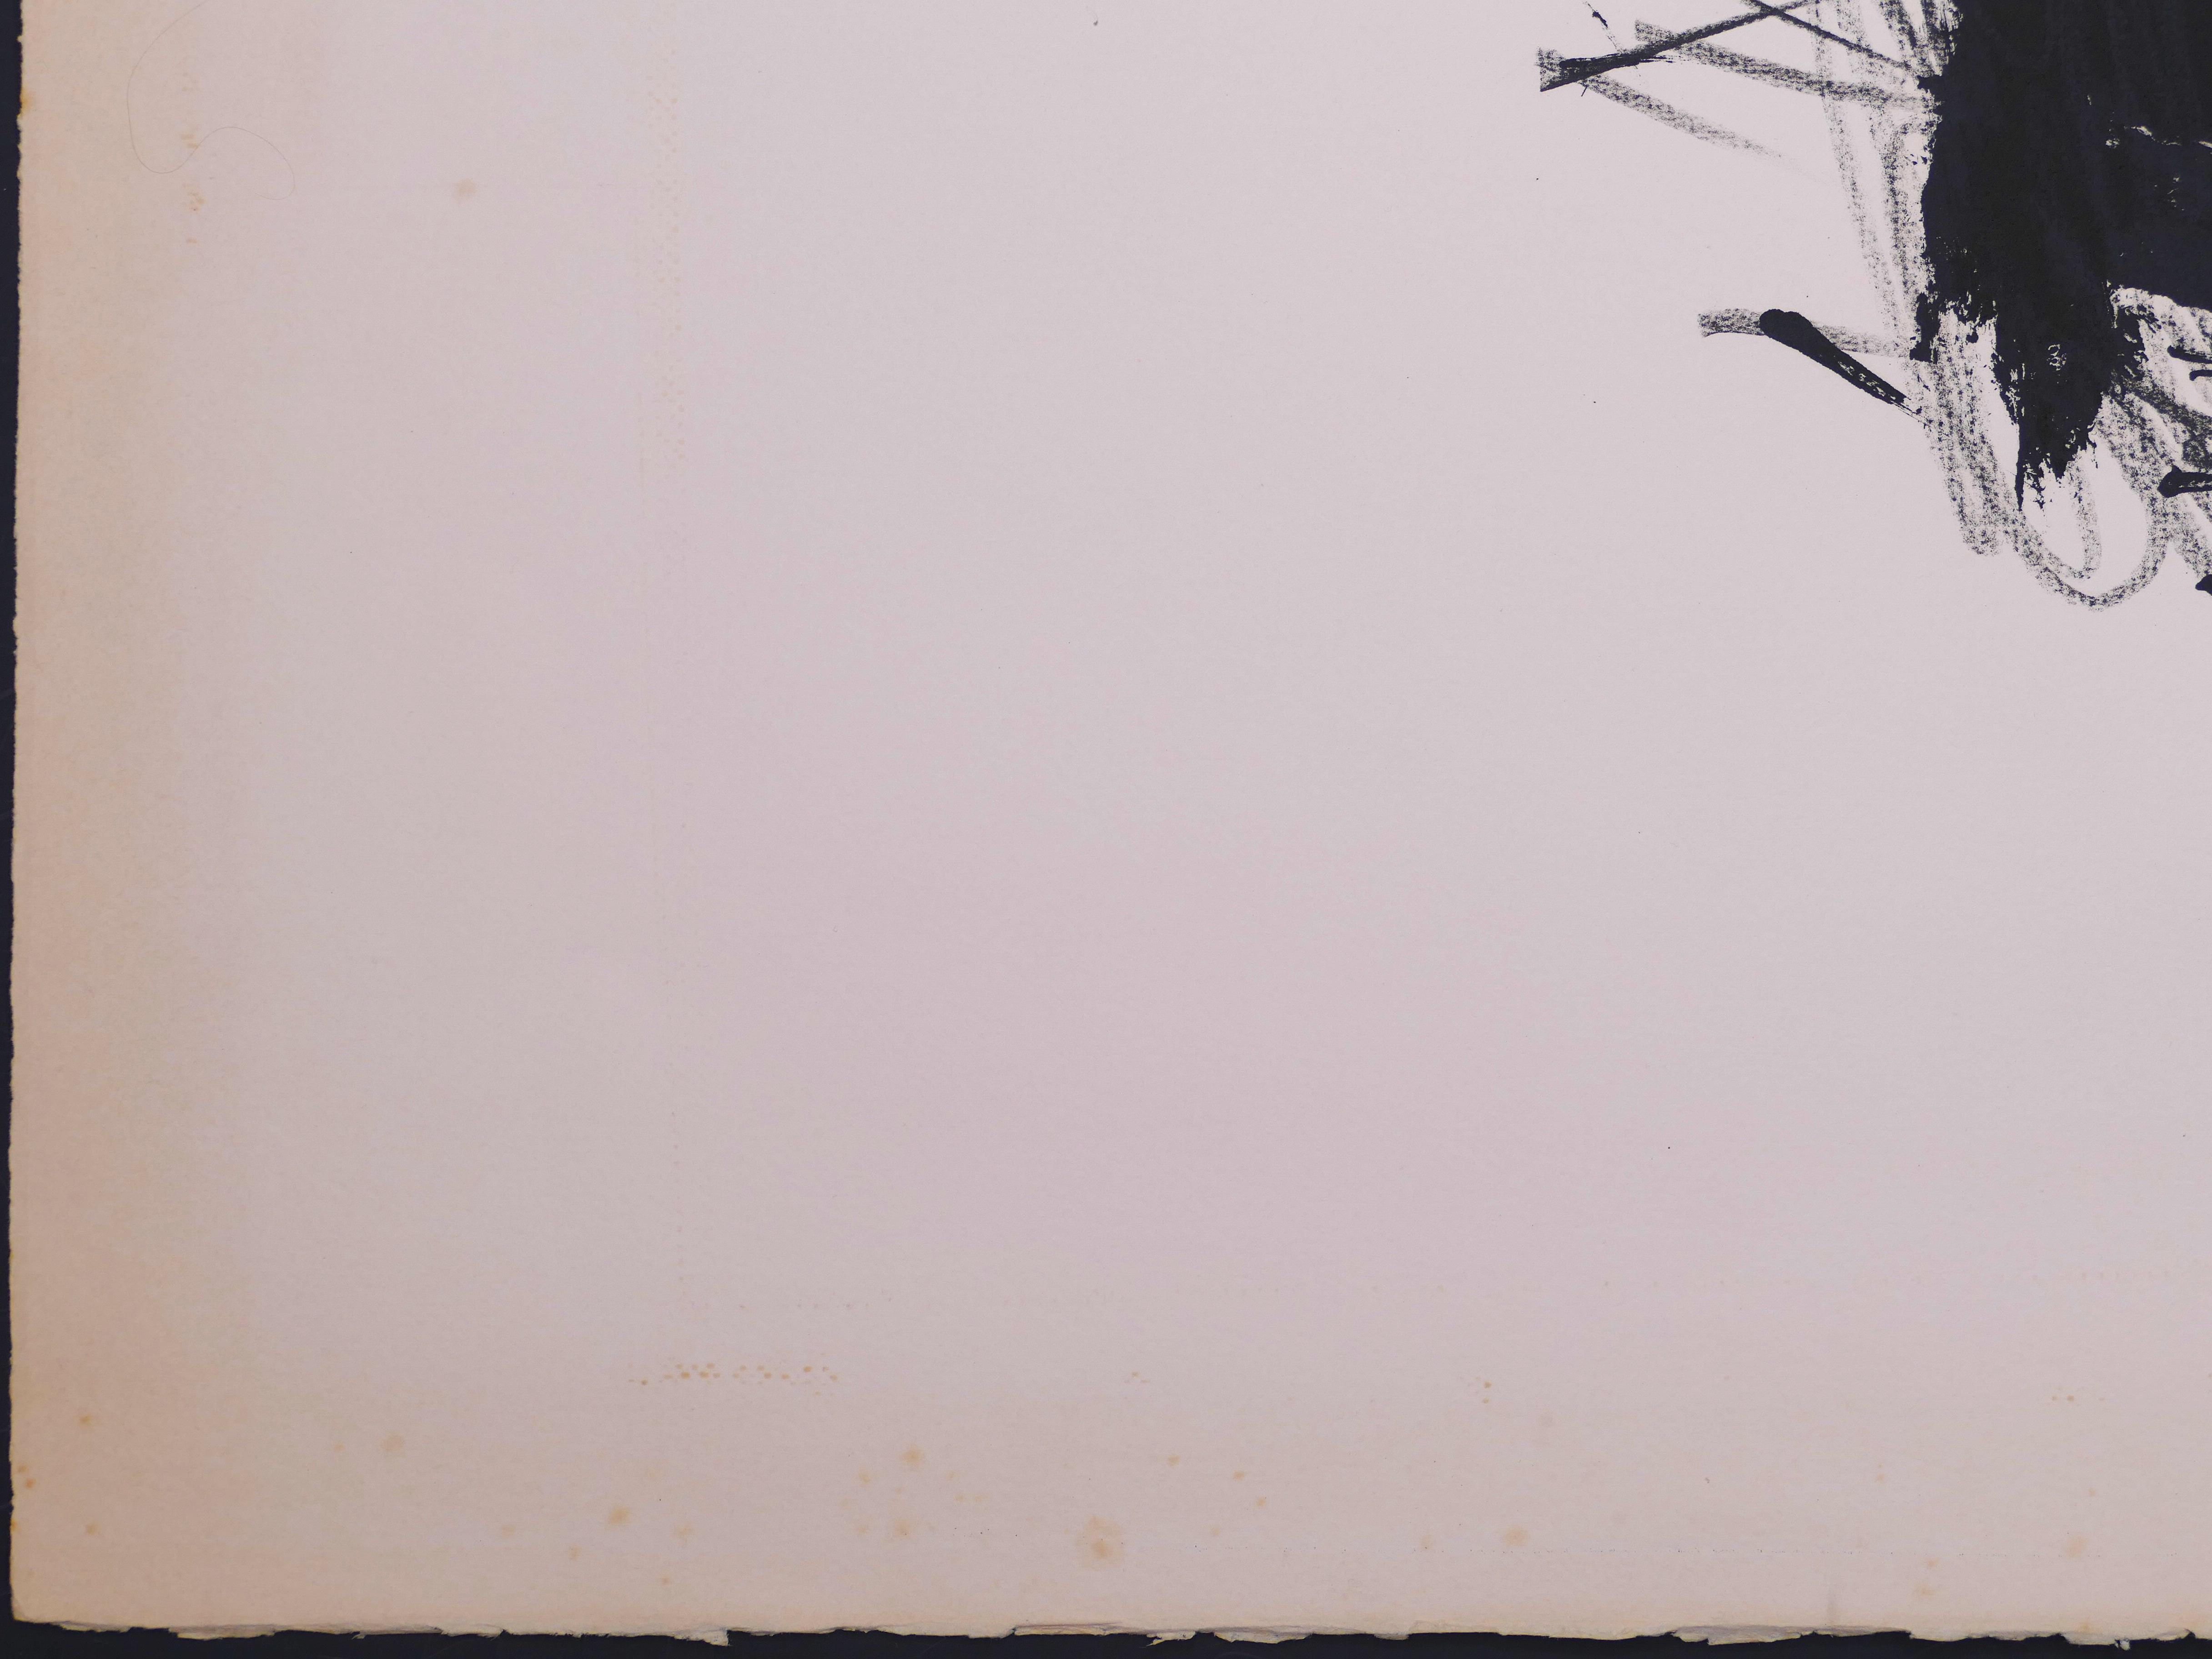 Untitled ist eine Original-Lithografie von Antoni Tàpies aus dem Jahr 1979.

Handsigniert am unteren rechten Rand

Links unten nummeriert. Ausgabe 53/75.

Guter Zustand mit Ausnahme einiger Stockflecken an den Rändern.

Gesamtkatalog: Galfetti 233. 